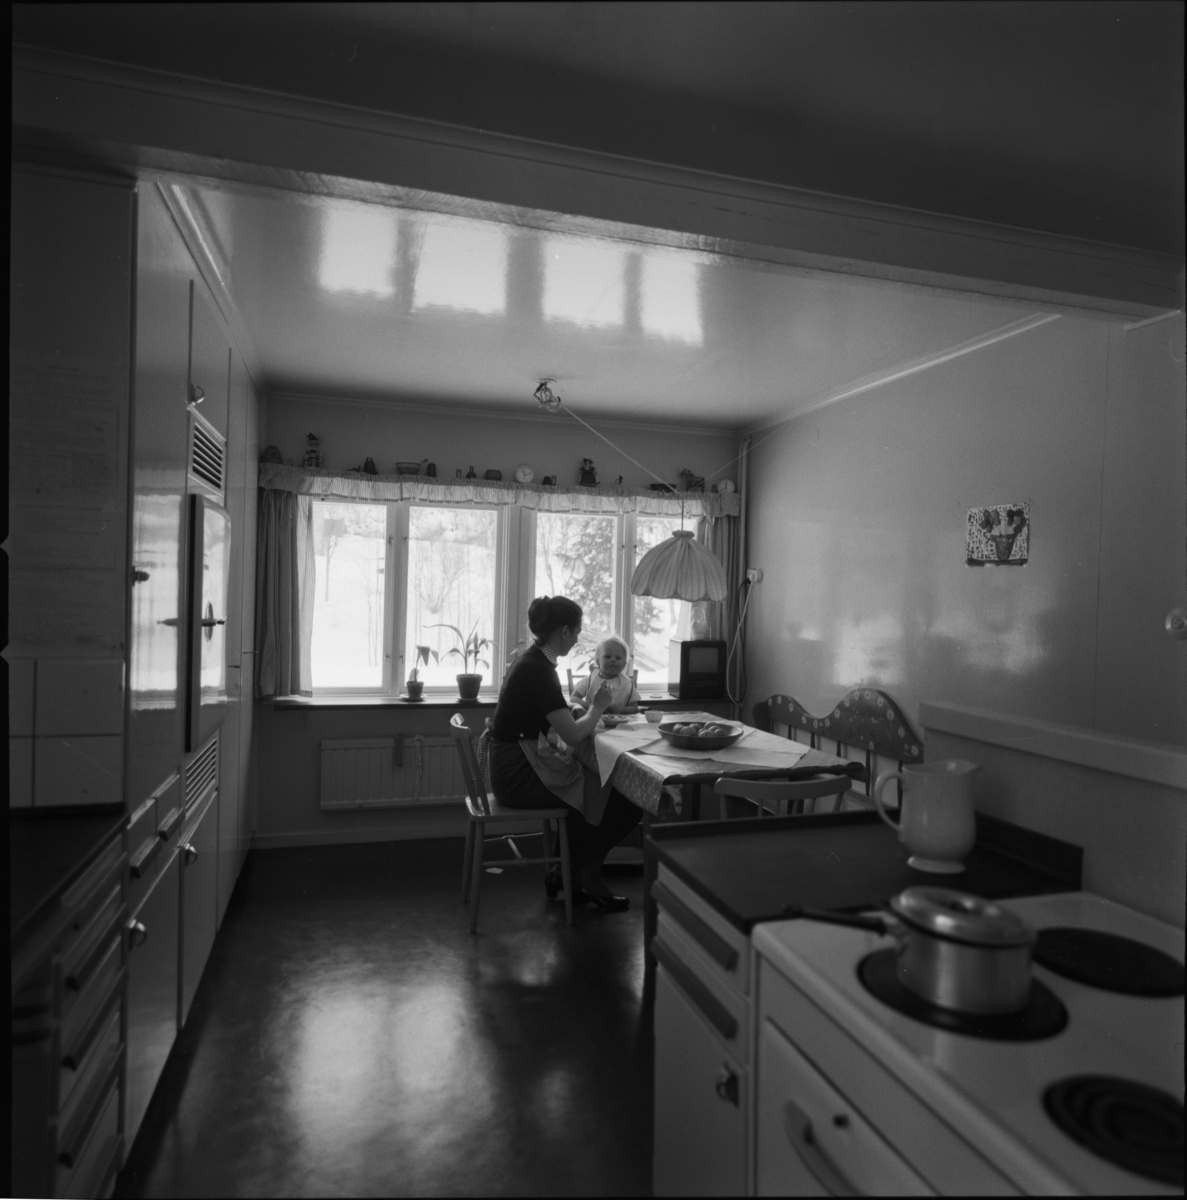 villa Ahlgren
Interiör av kök. Kvinna med barn i motljus mot fönster i fonden